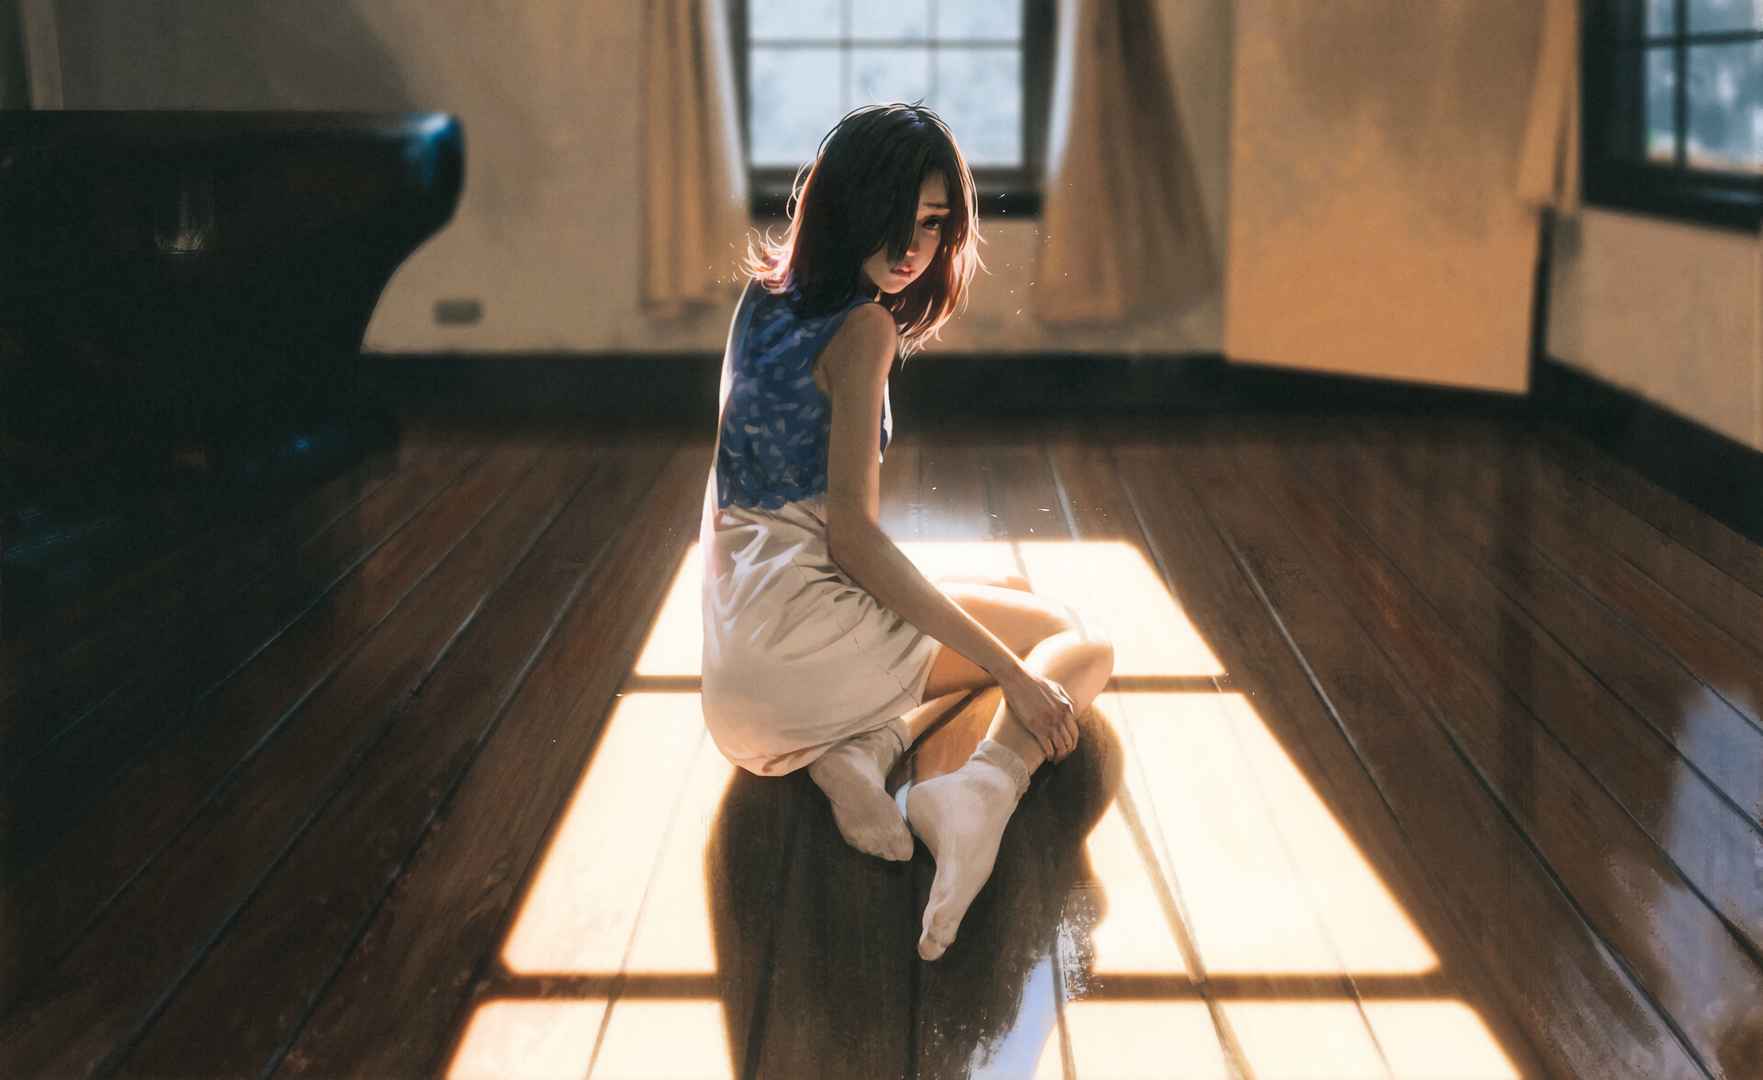 女孩 侧坐在木地板上 室内 窗户 阳光 唯美艺术4k动漫人物壁纸-